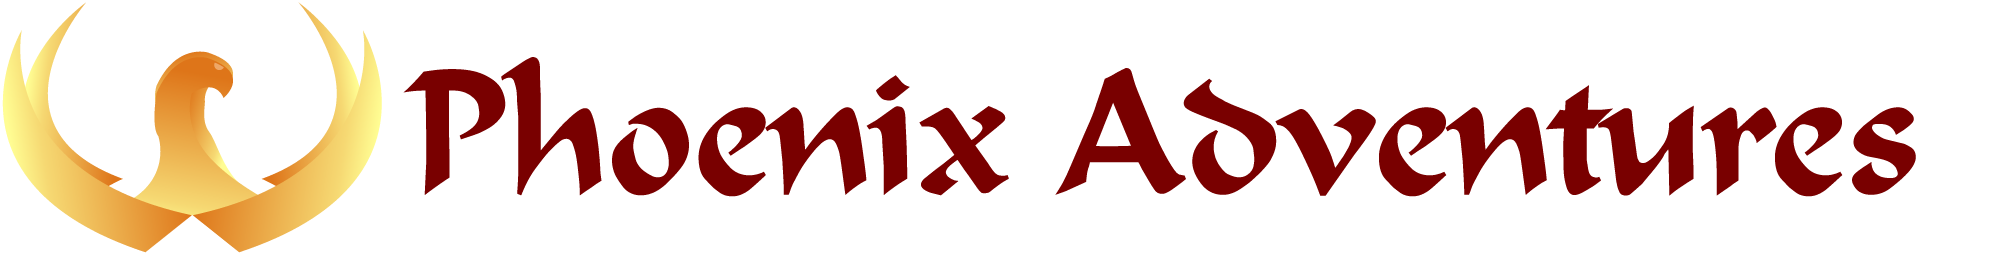 Phoenix Adventures Logo with Text